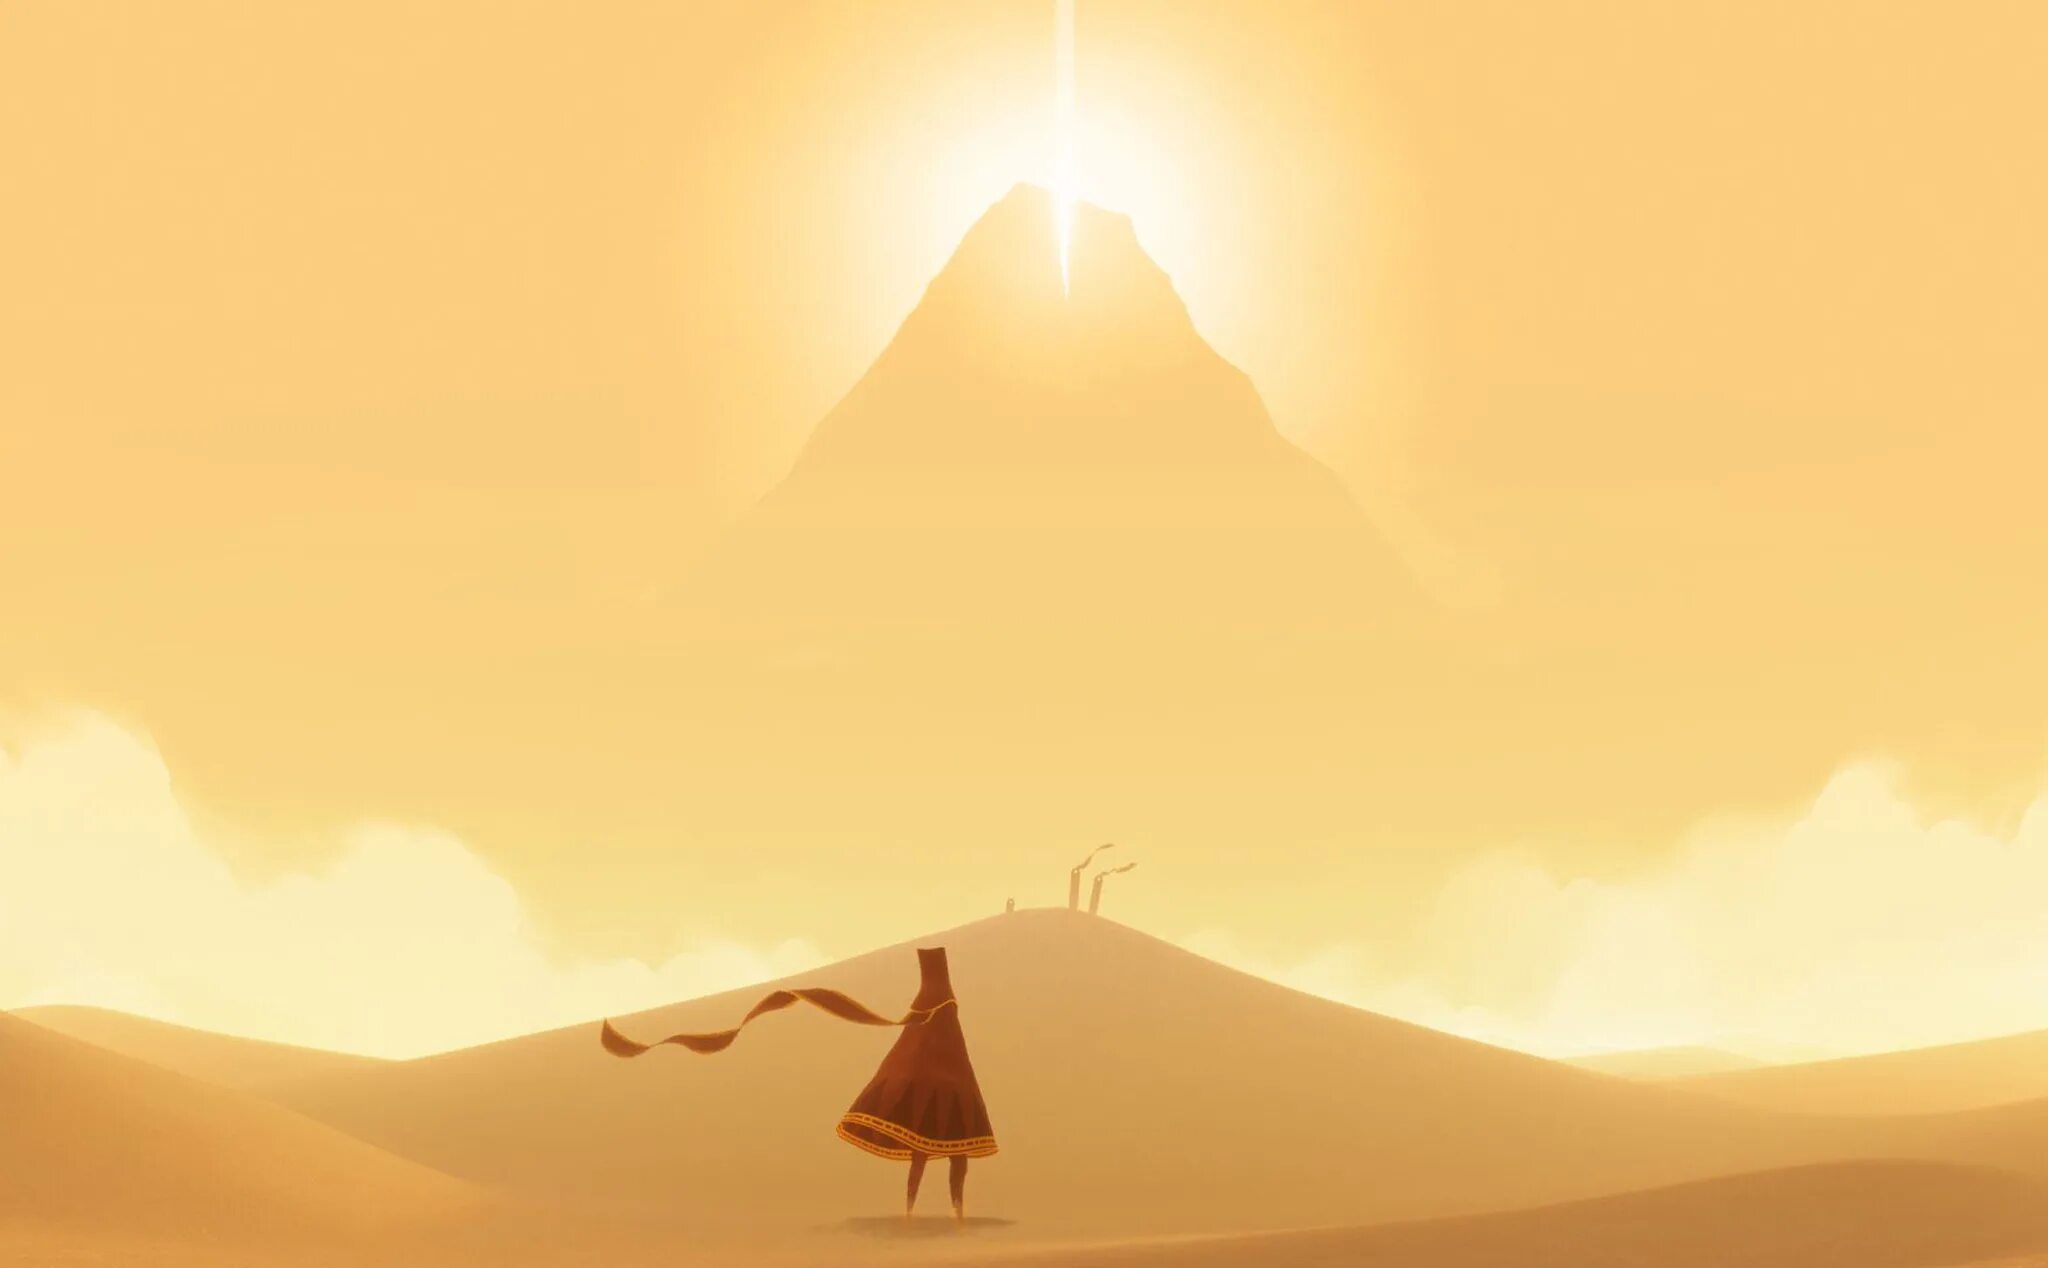 Journey читы. Journey (игра, 2012). Journey игра thatgamecompany. Игра путешествие ps4. Инди игра в пустыне.